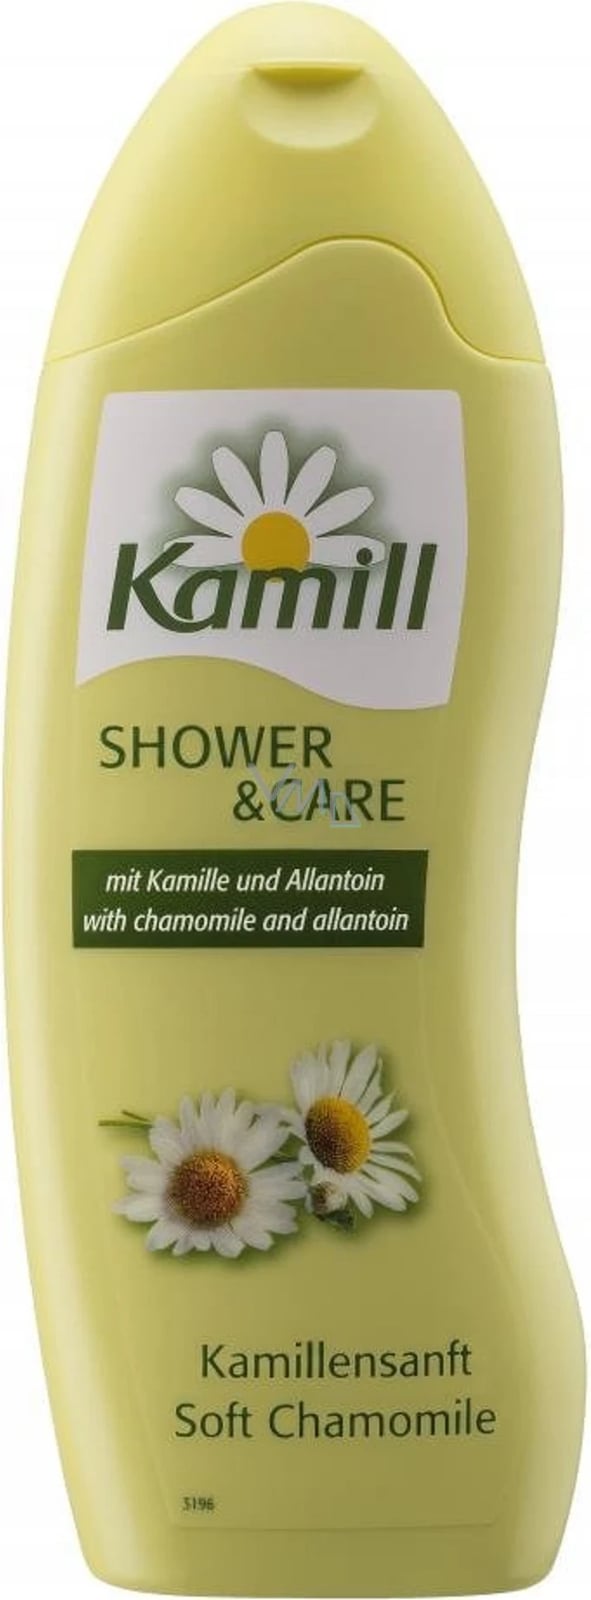 Xhel dushi Kamill Soft Chamomile, 250ml